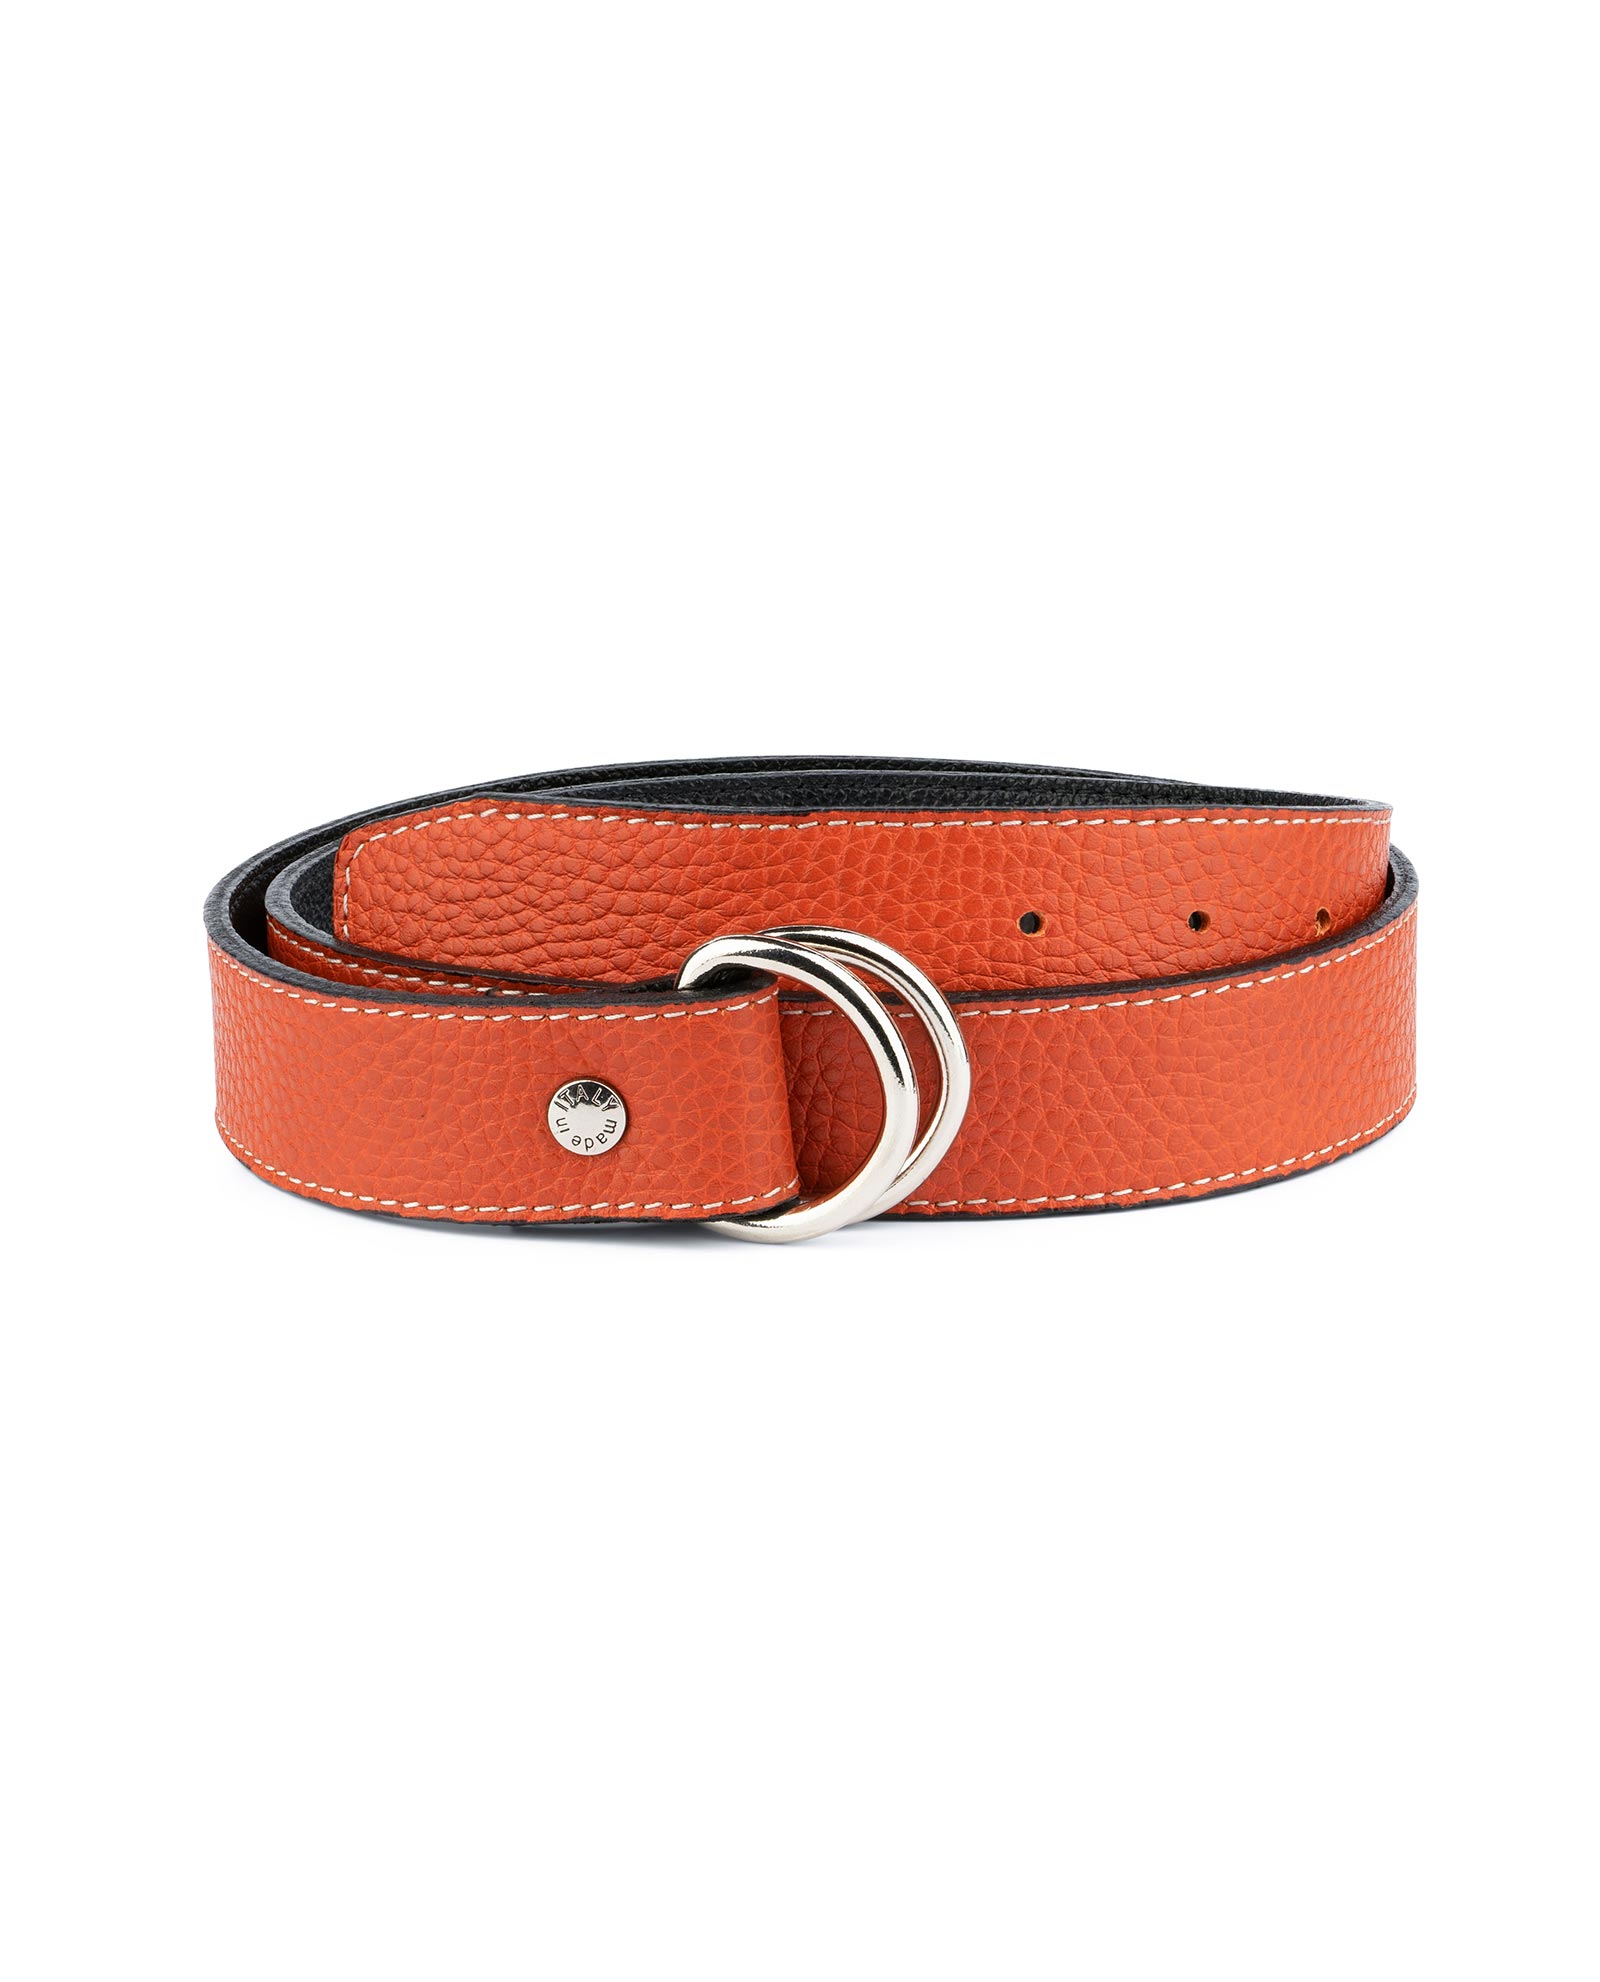 Buy Dark Orange D Ring Belt - For Men - LeatherBeltsOnline.com